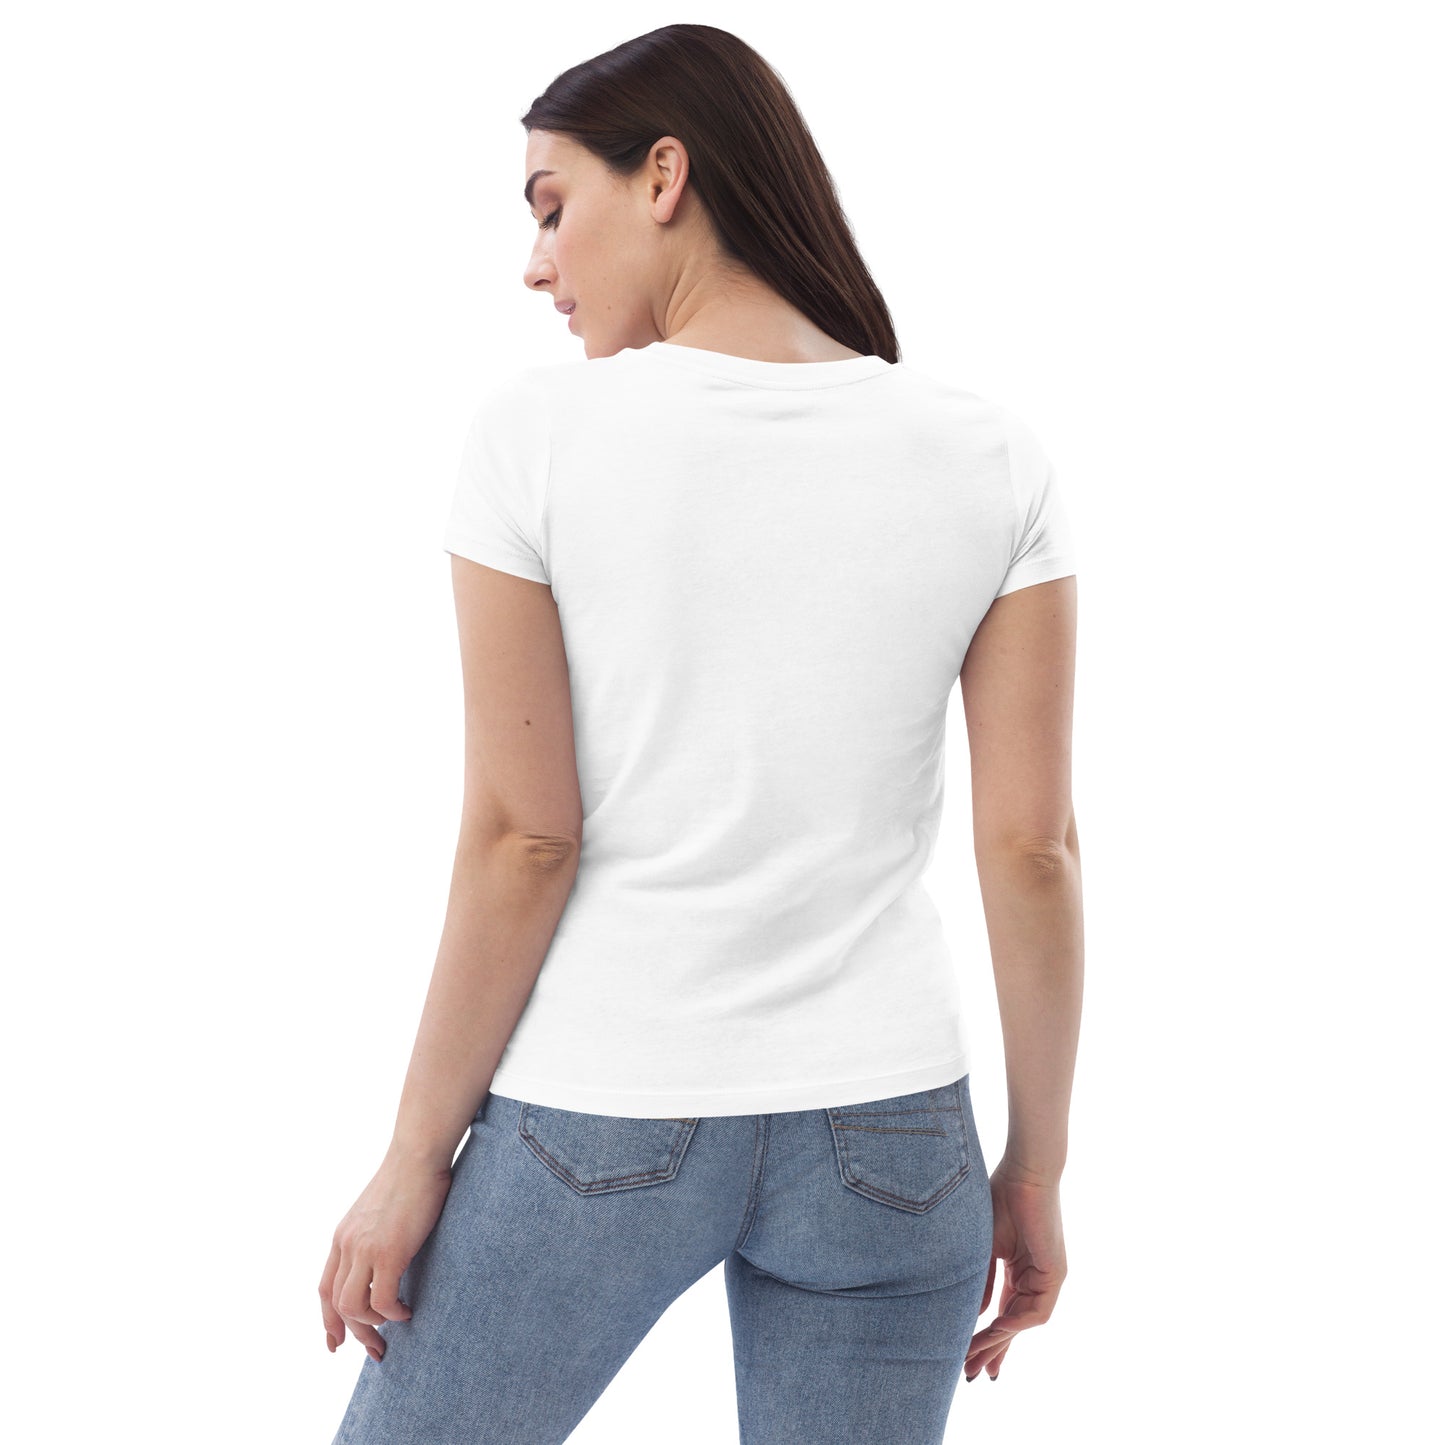 SOULSKY Logo Women's Crewneck T-shirt - White